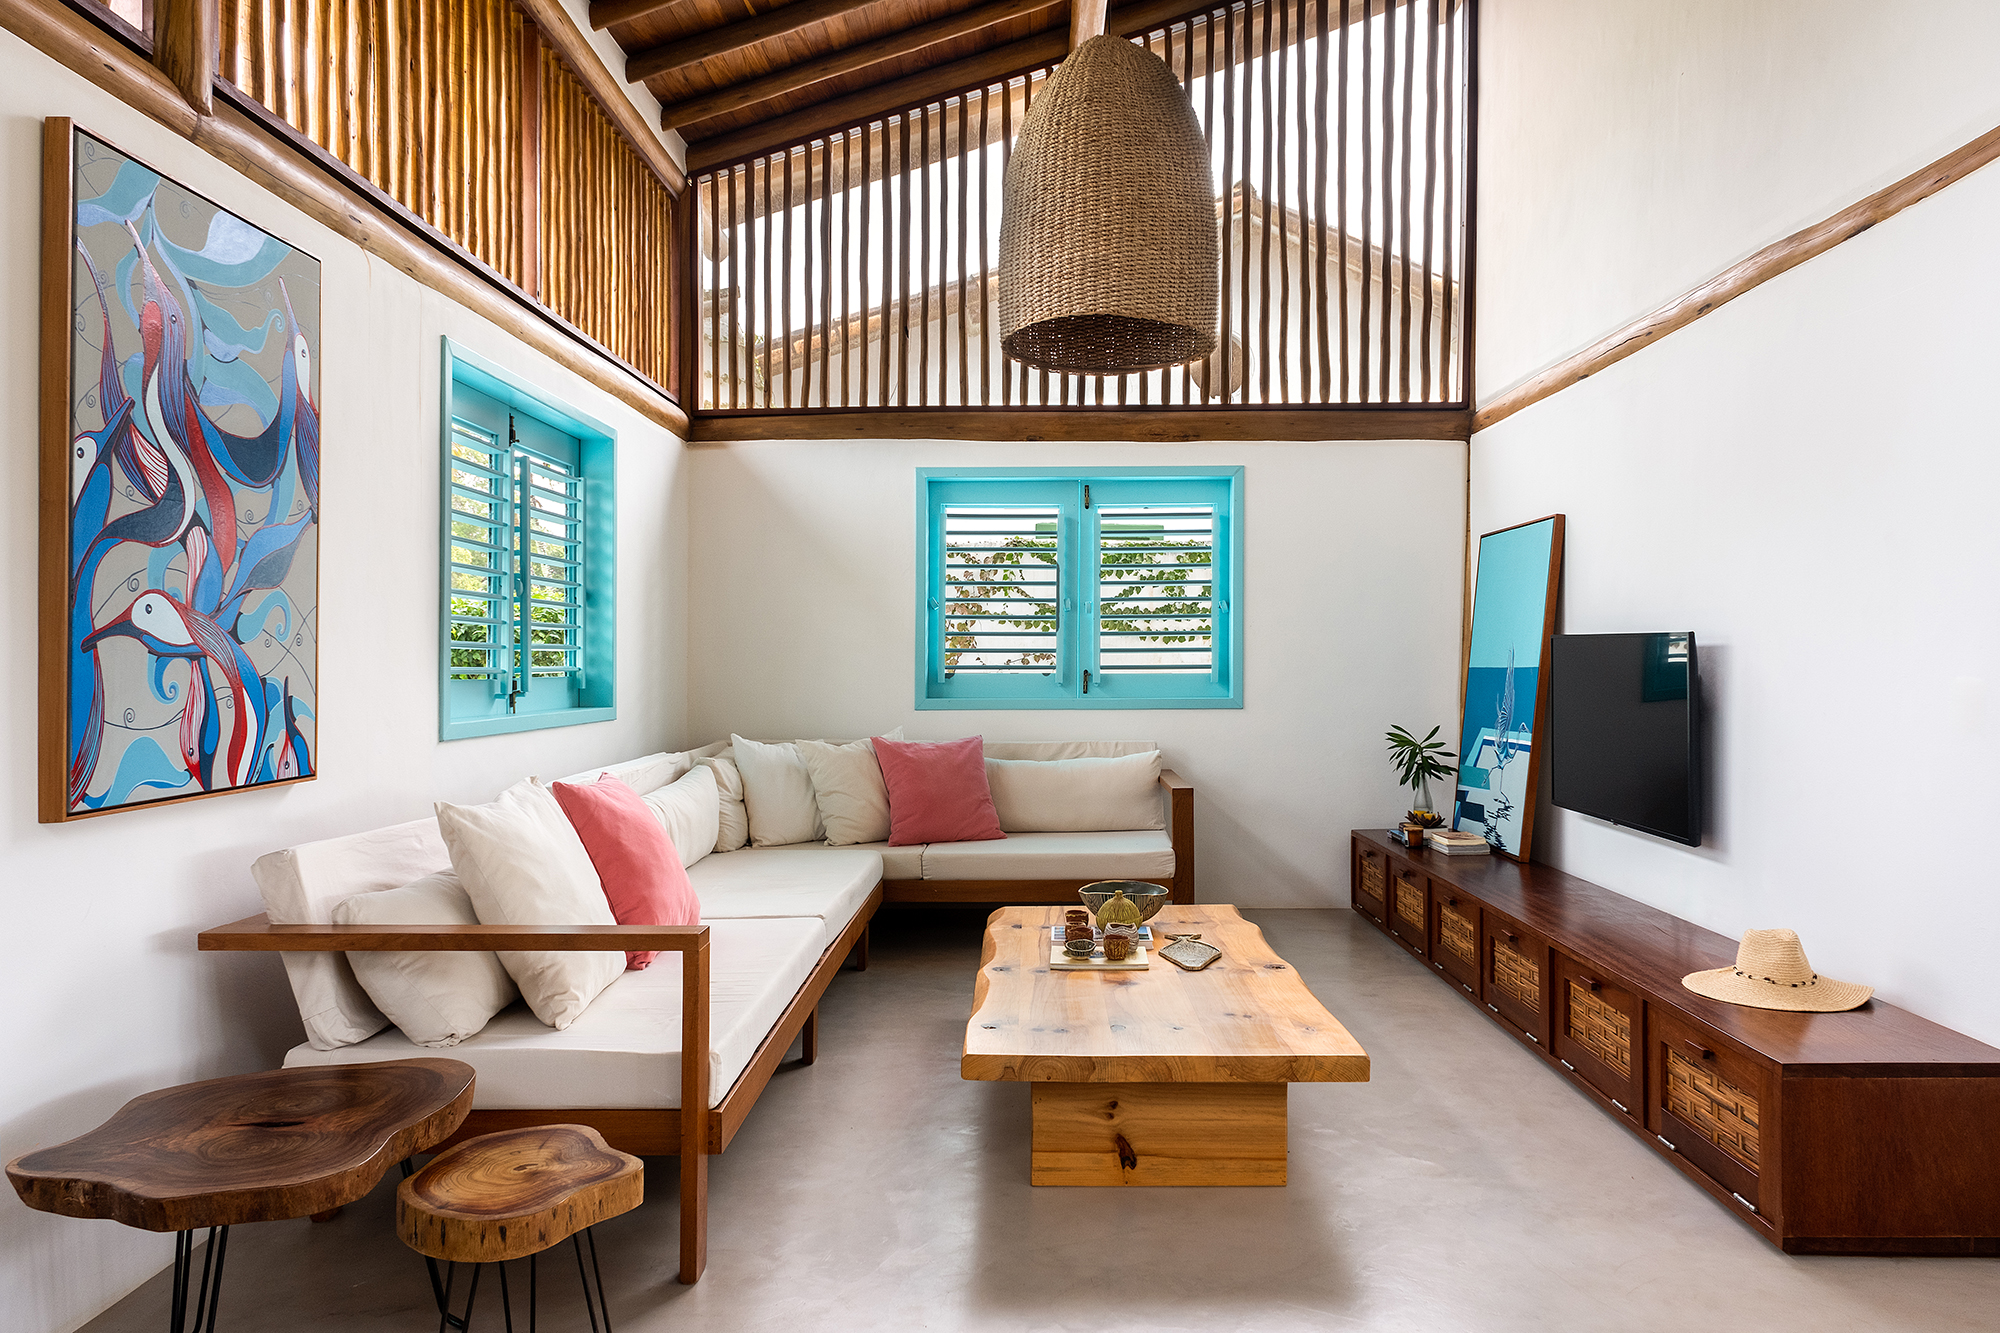 Casa em Trancoso é inspirada na arquitetura colonial do sul da Bahia. Projeto Conrado Ceravolo. Na foto, sala com esquadria azul e móveis rústicos.